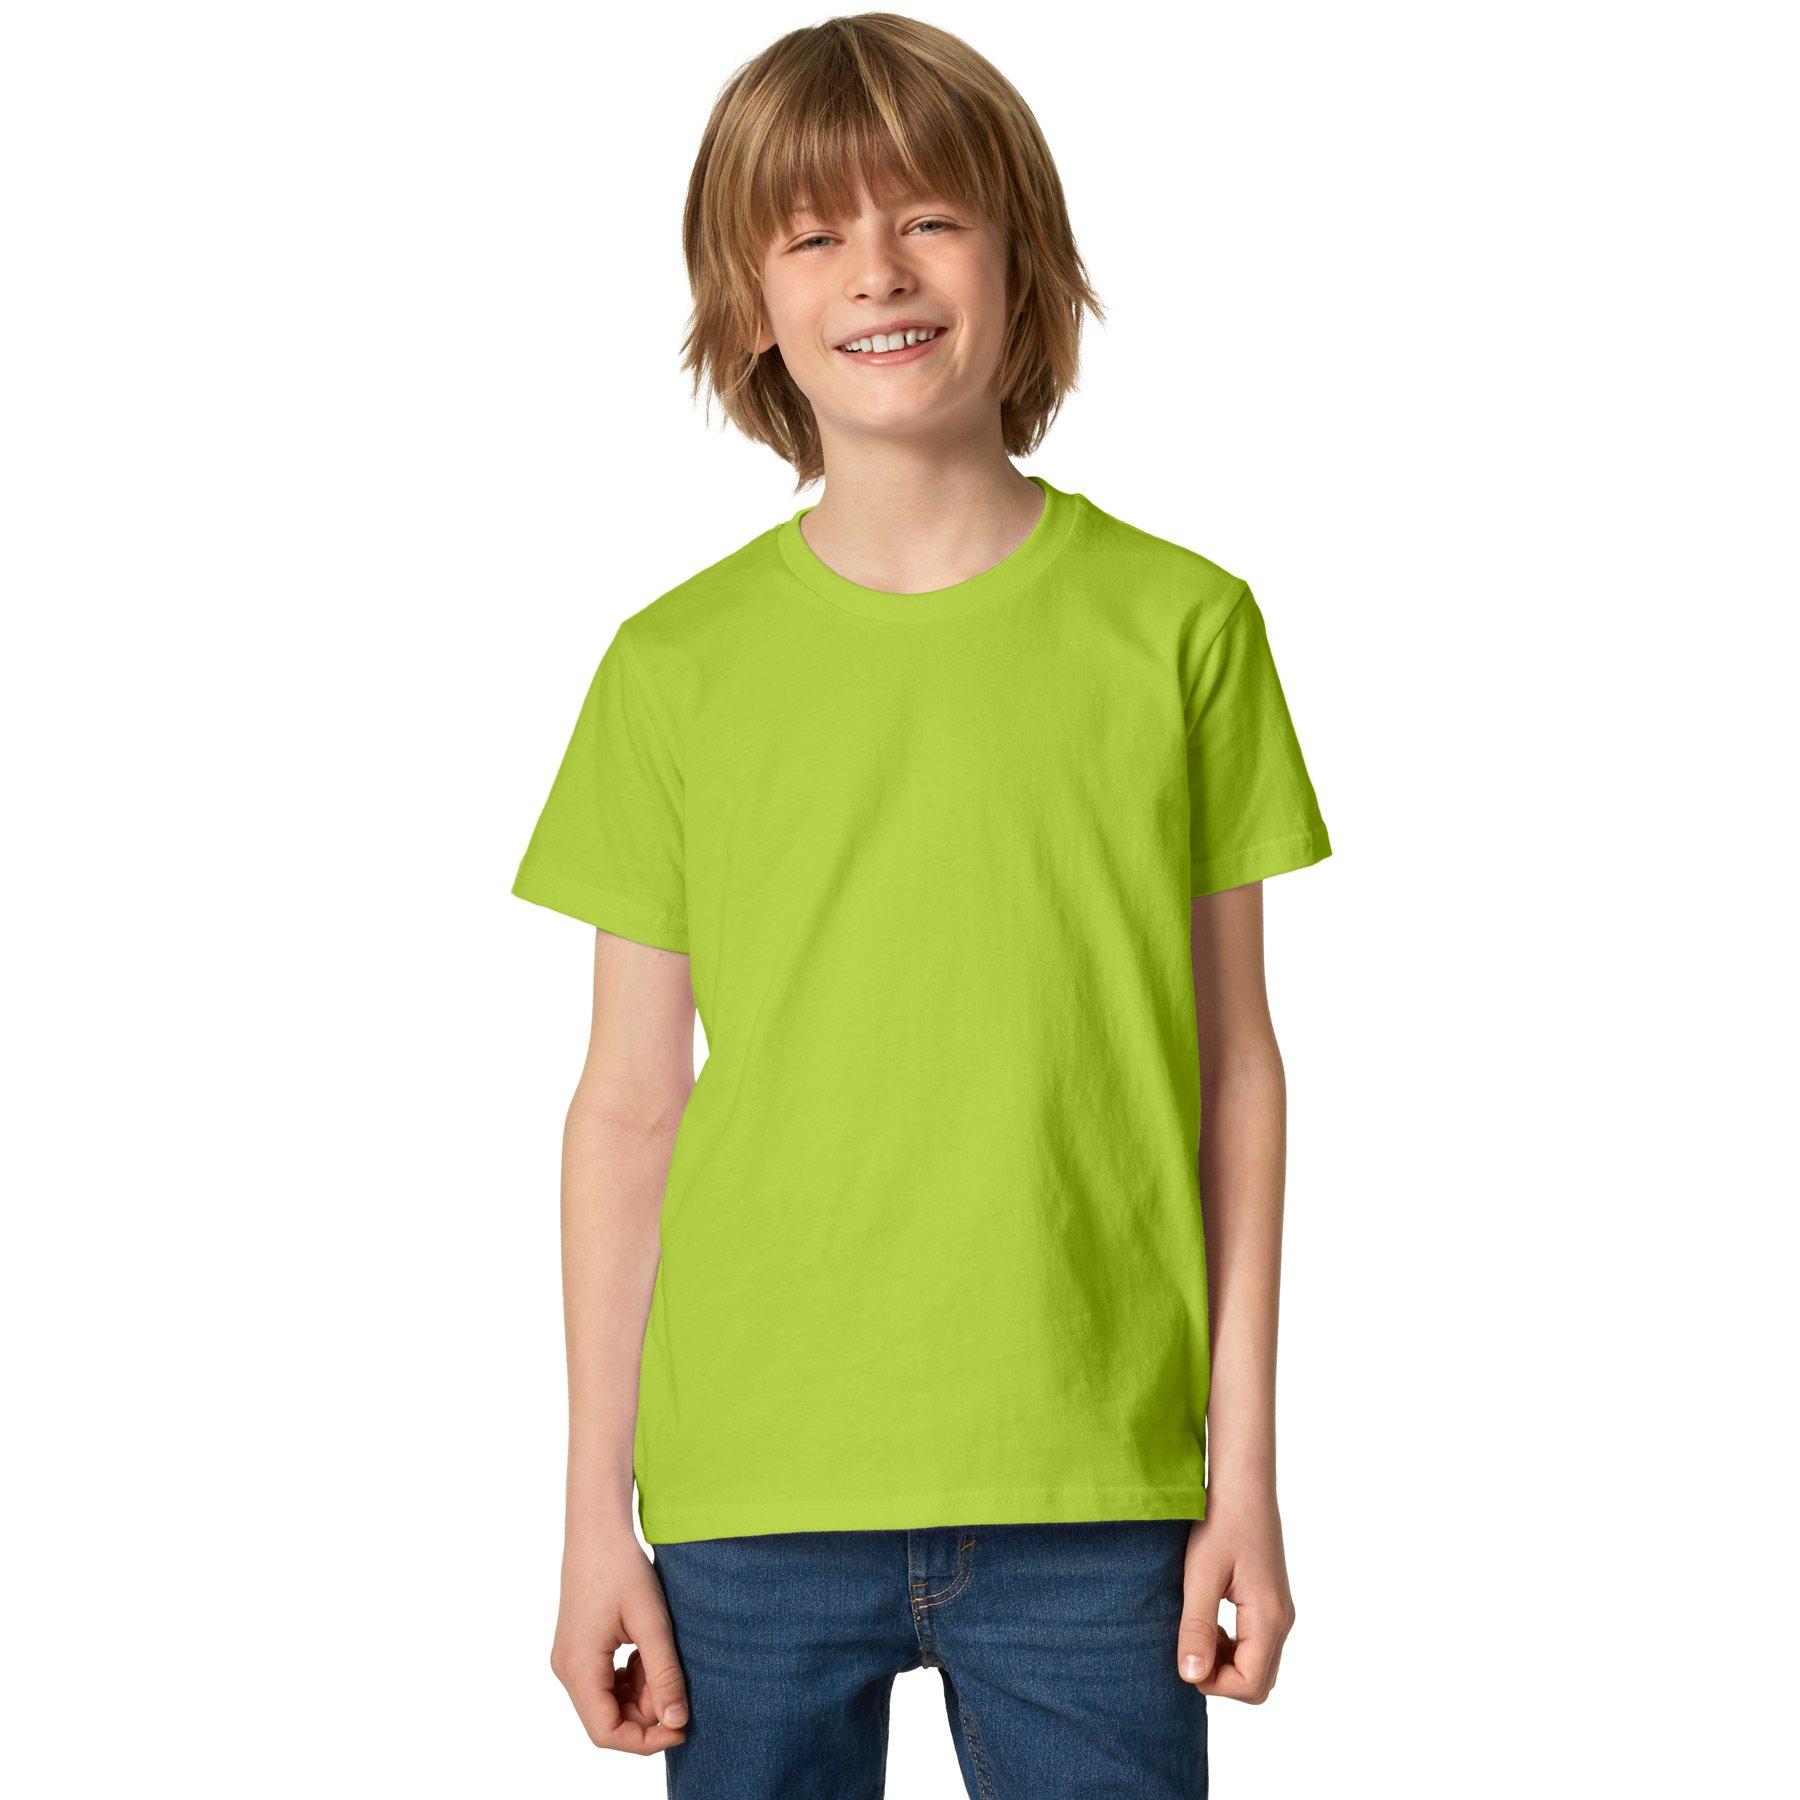 T-shirt Kinder Jungen Hellgrün 128 von Tectake